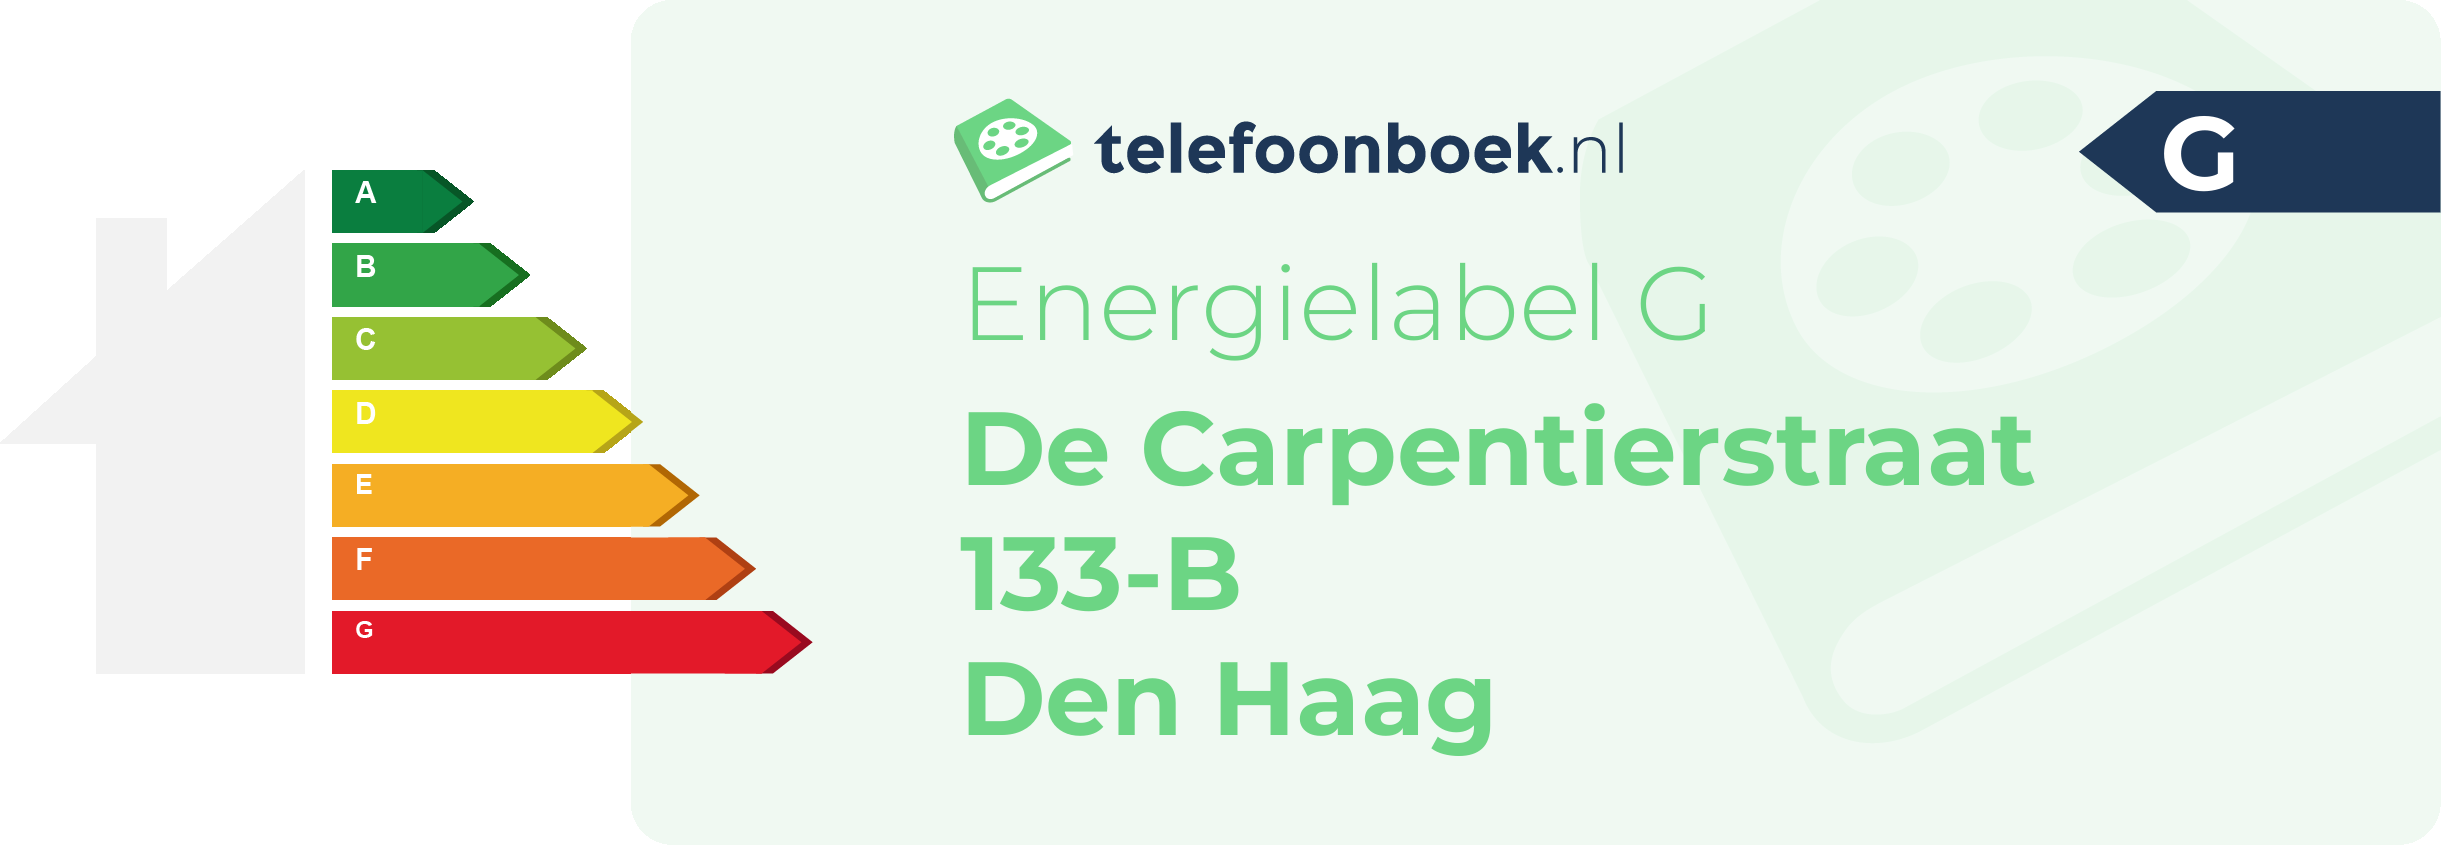 Energielabel De Carpentierstraat 133-B Den Haag